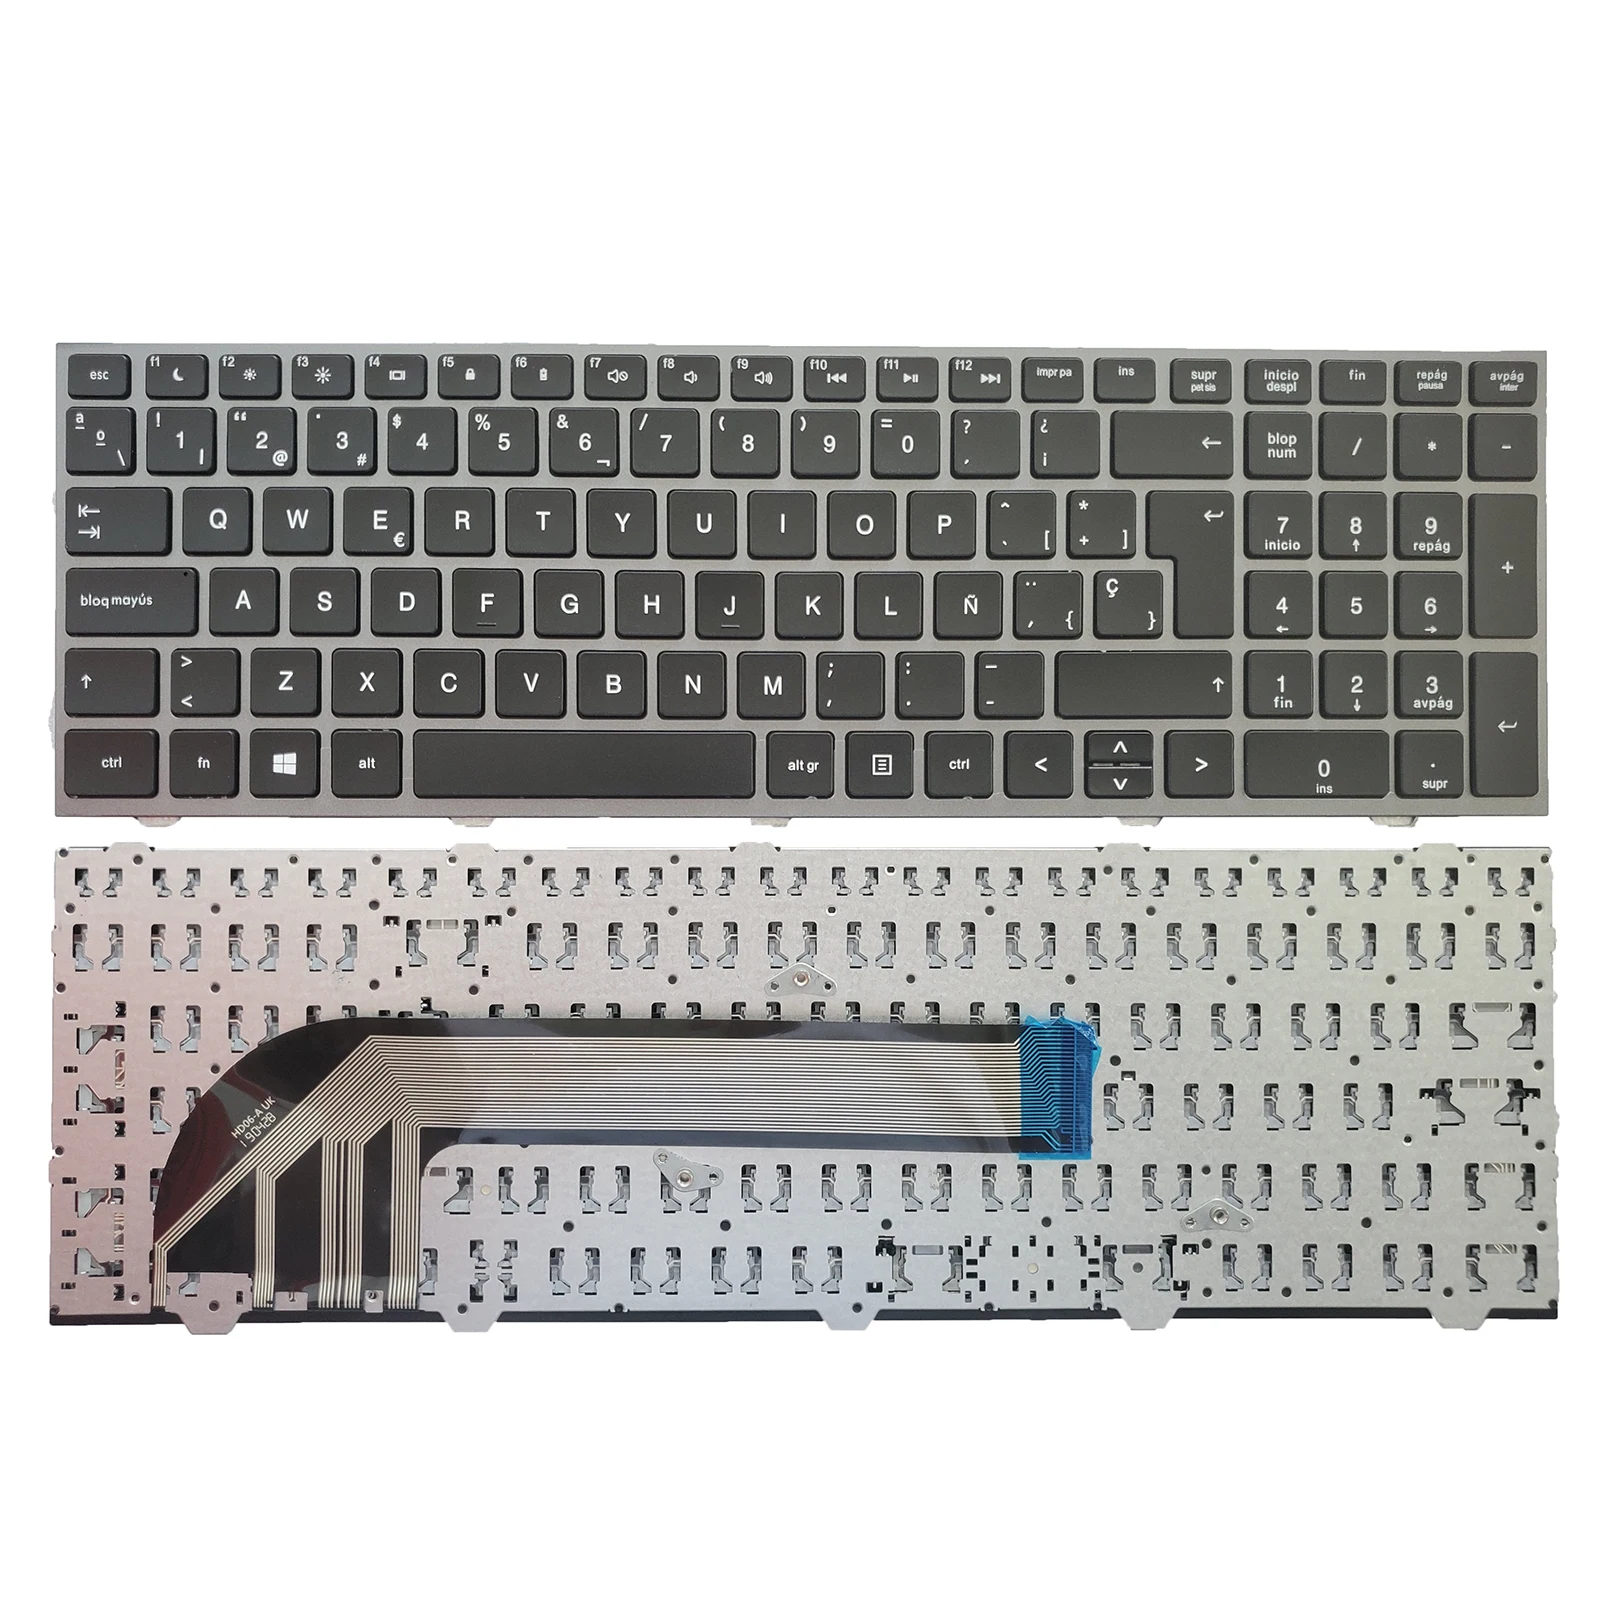 

Клавиатура для ноутбука HP Probook 4540 4540s 4545 4545s, 701485-001 SP Teclado, серебристая рама, оптом